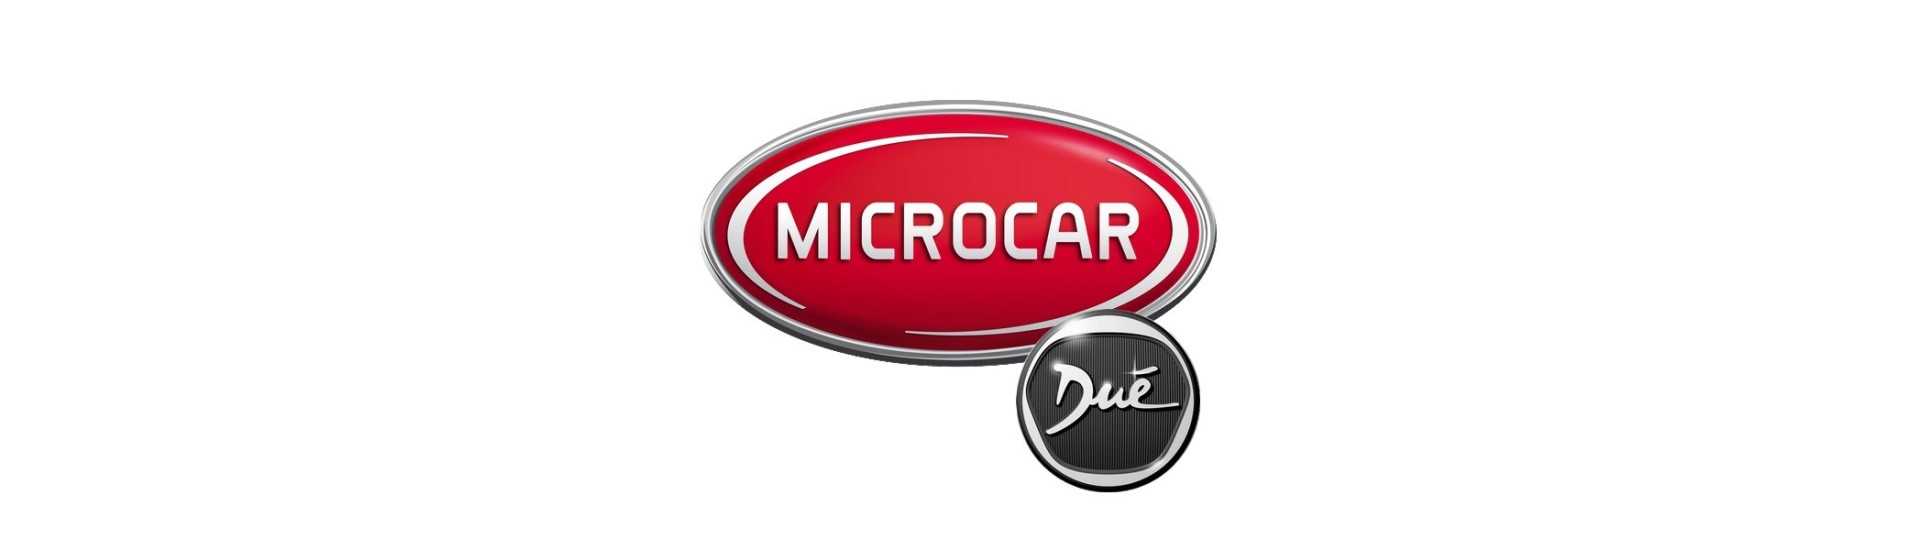 Quantidade de brisa ao melhor preço carro sem licença Microcar Dué